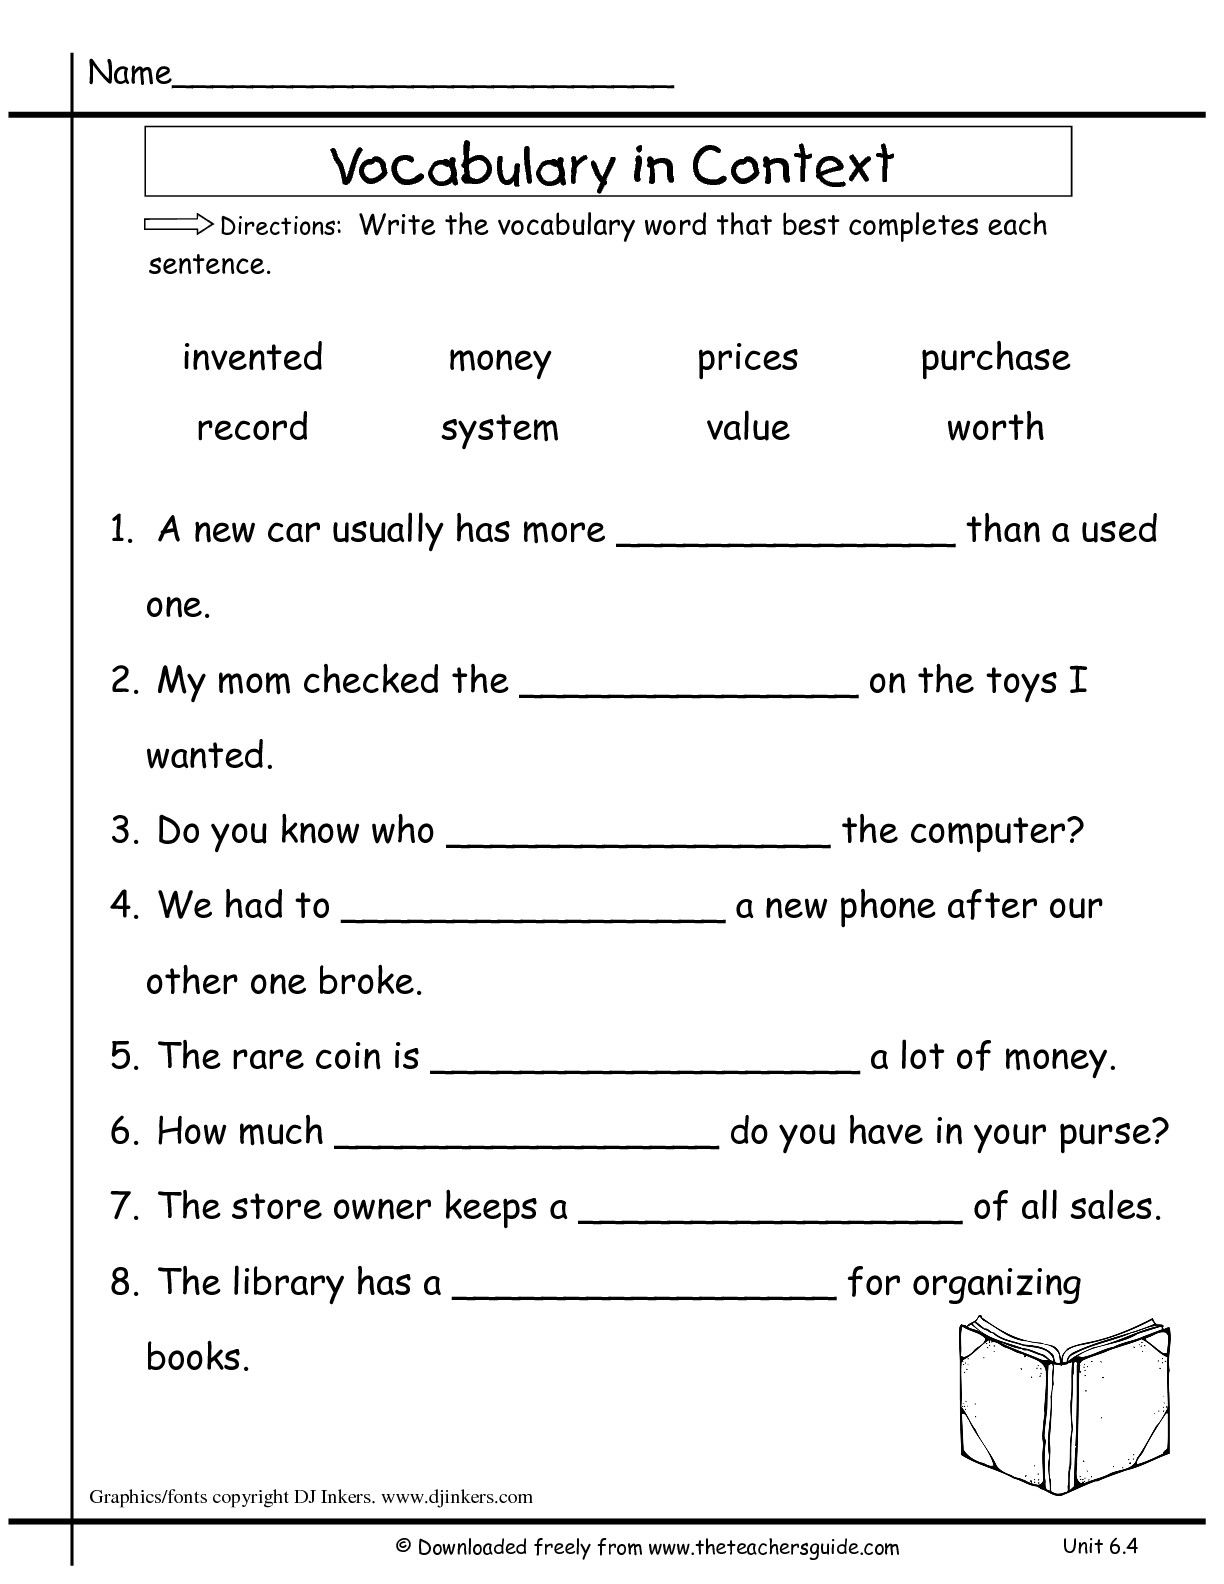 Image Result For Vocabulary Word Worksheet Grade 7 Lecturas Cortas De Comprension Lectura De Comprensi n Lectura De Palabras